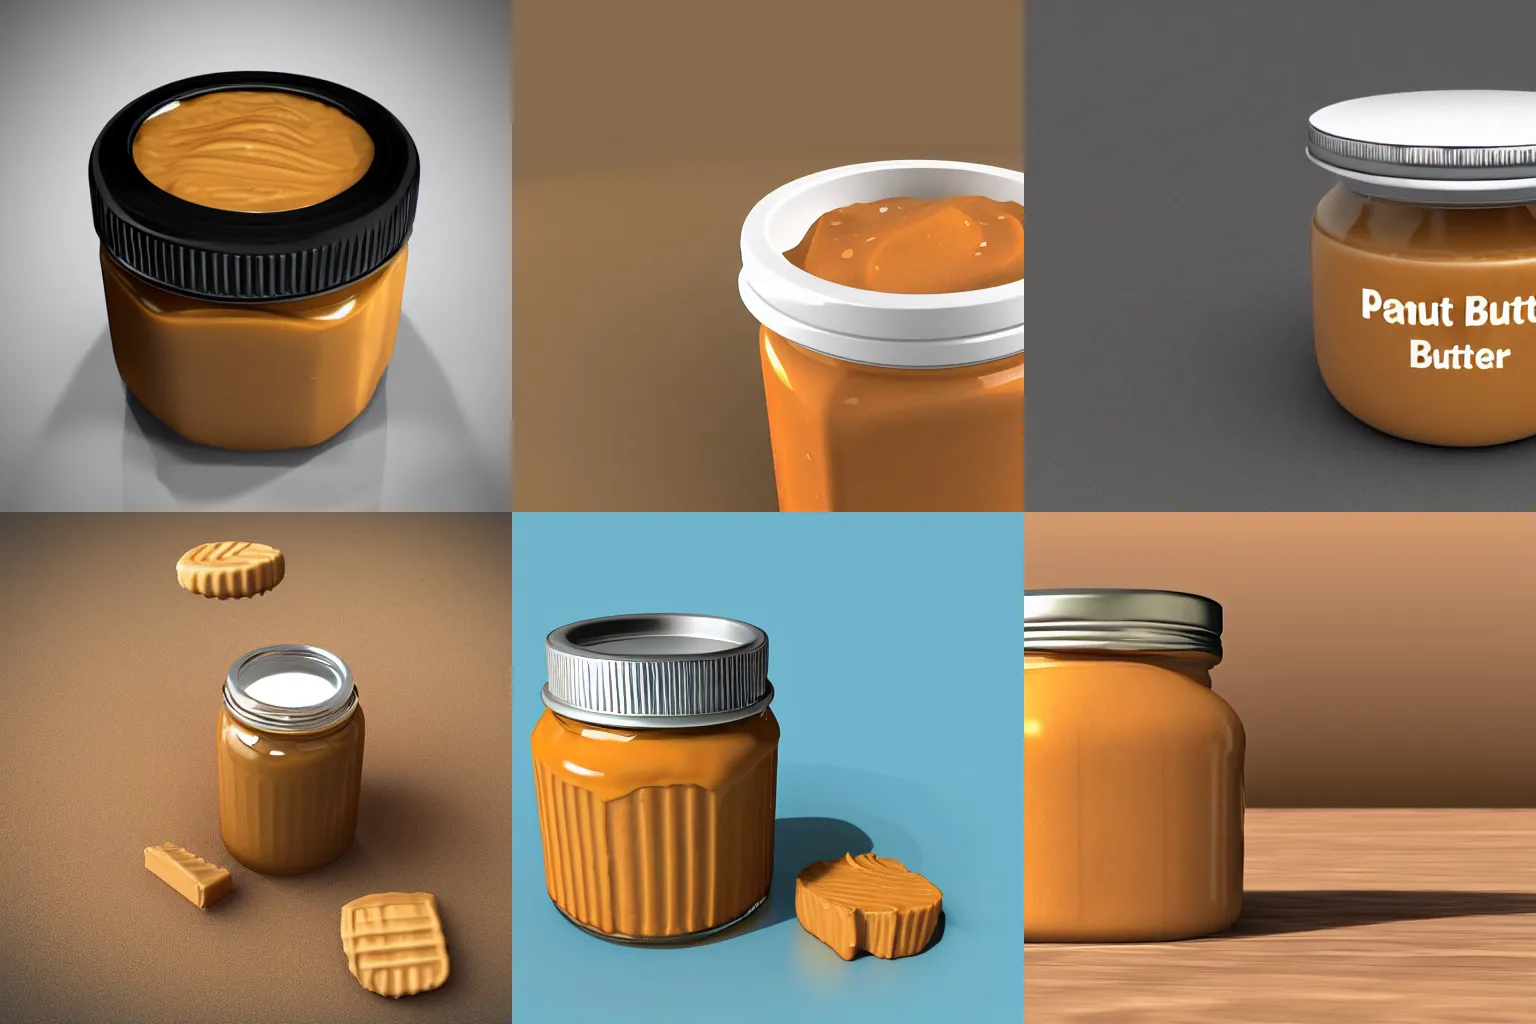 Prompt: 3d peanut butter jar render blender